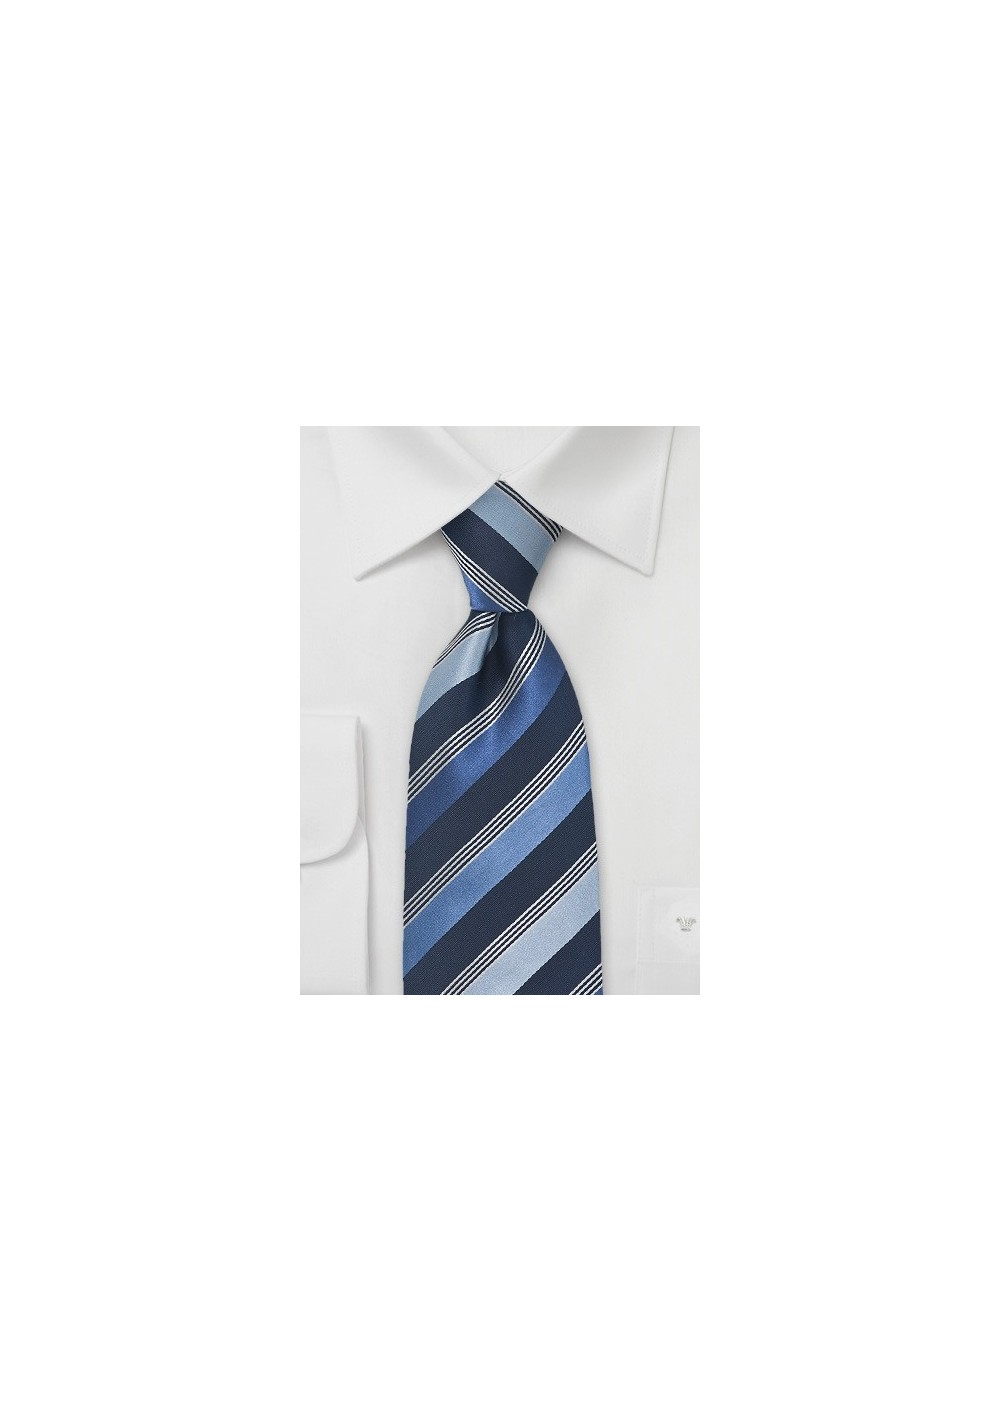 Asymmetrical Striped Tie in Tonal Blues